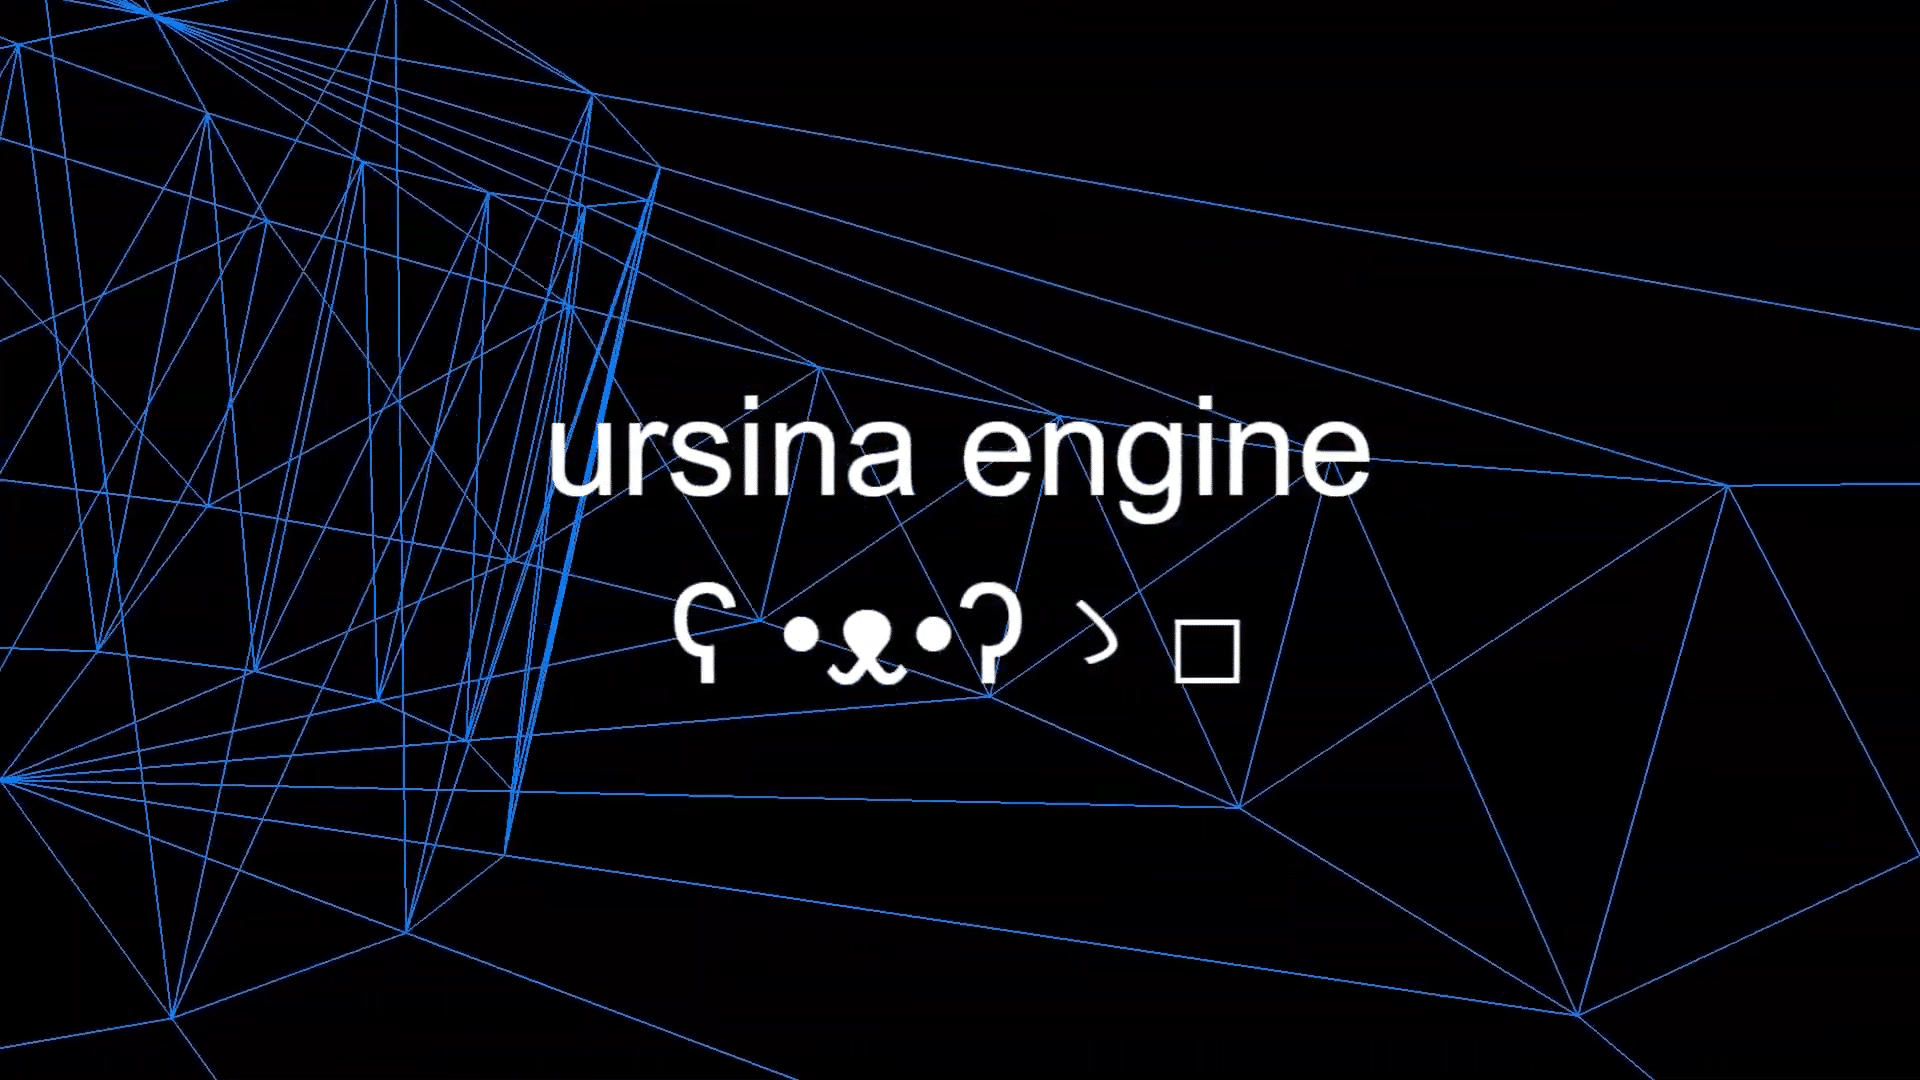 ursina engine